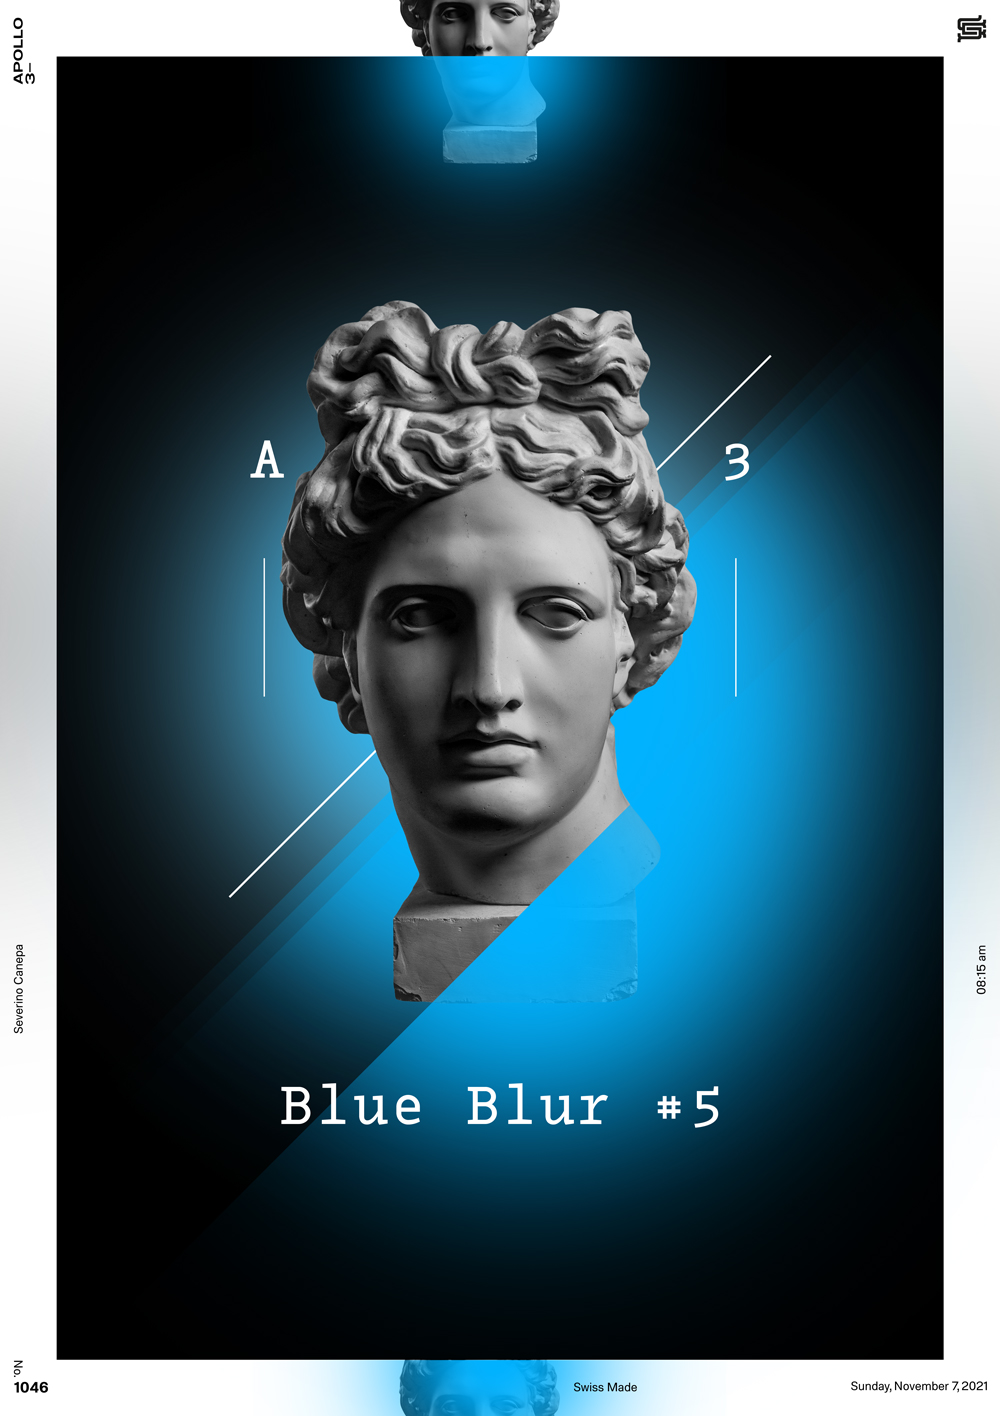 Blue transparent gradient, apollo's statue, and typographic design poster